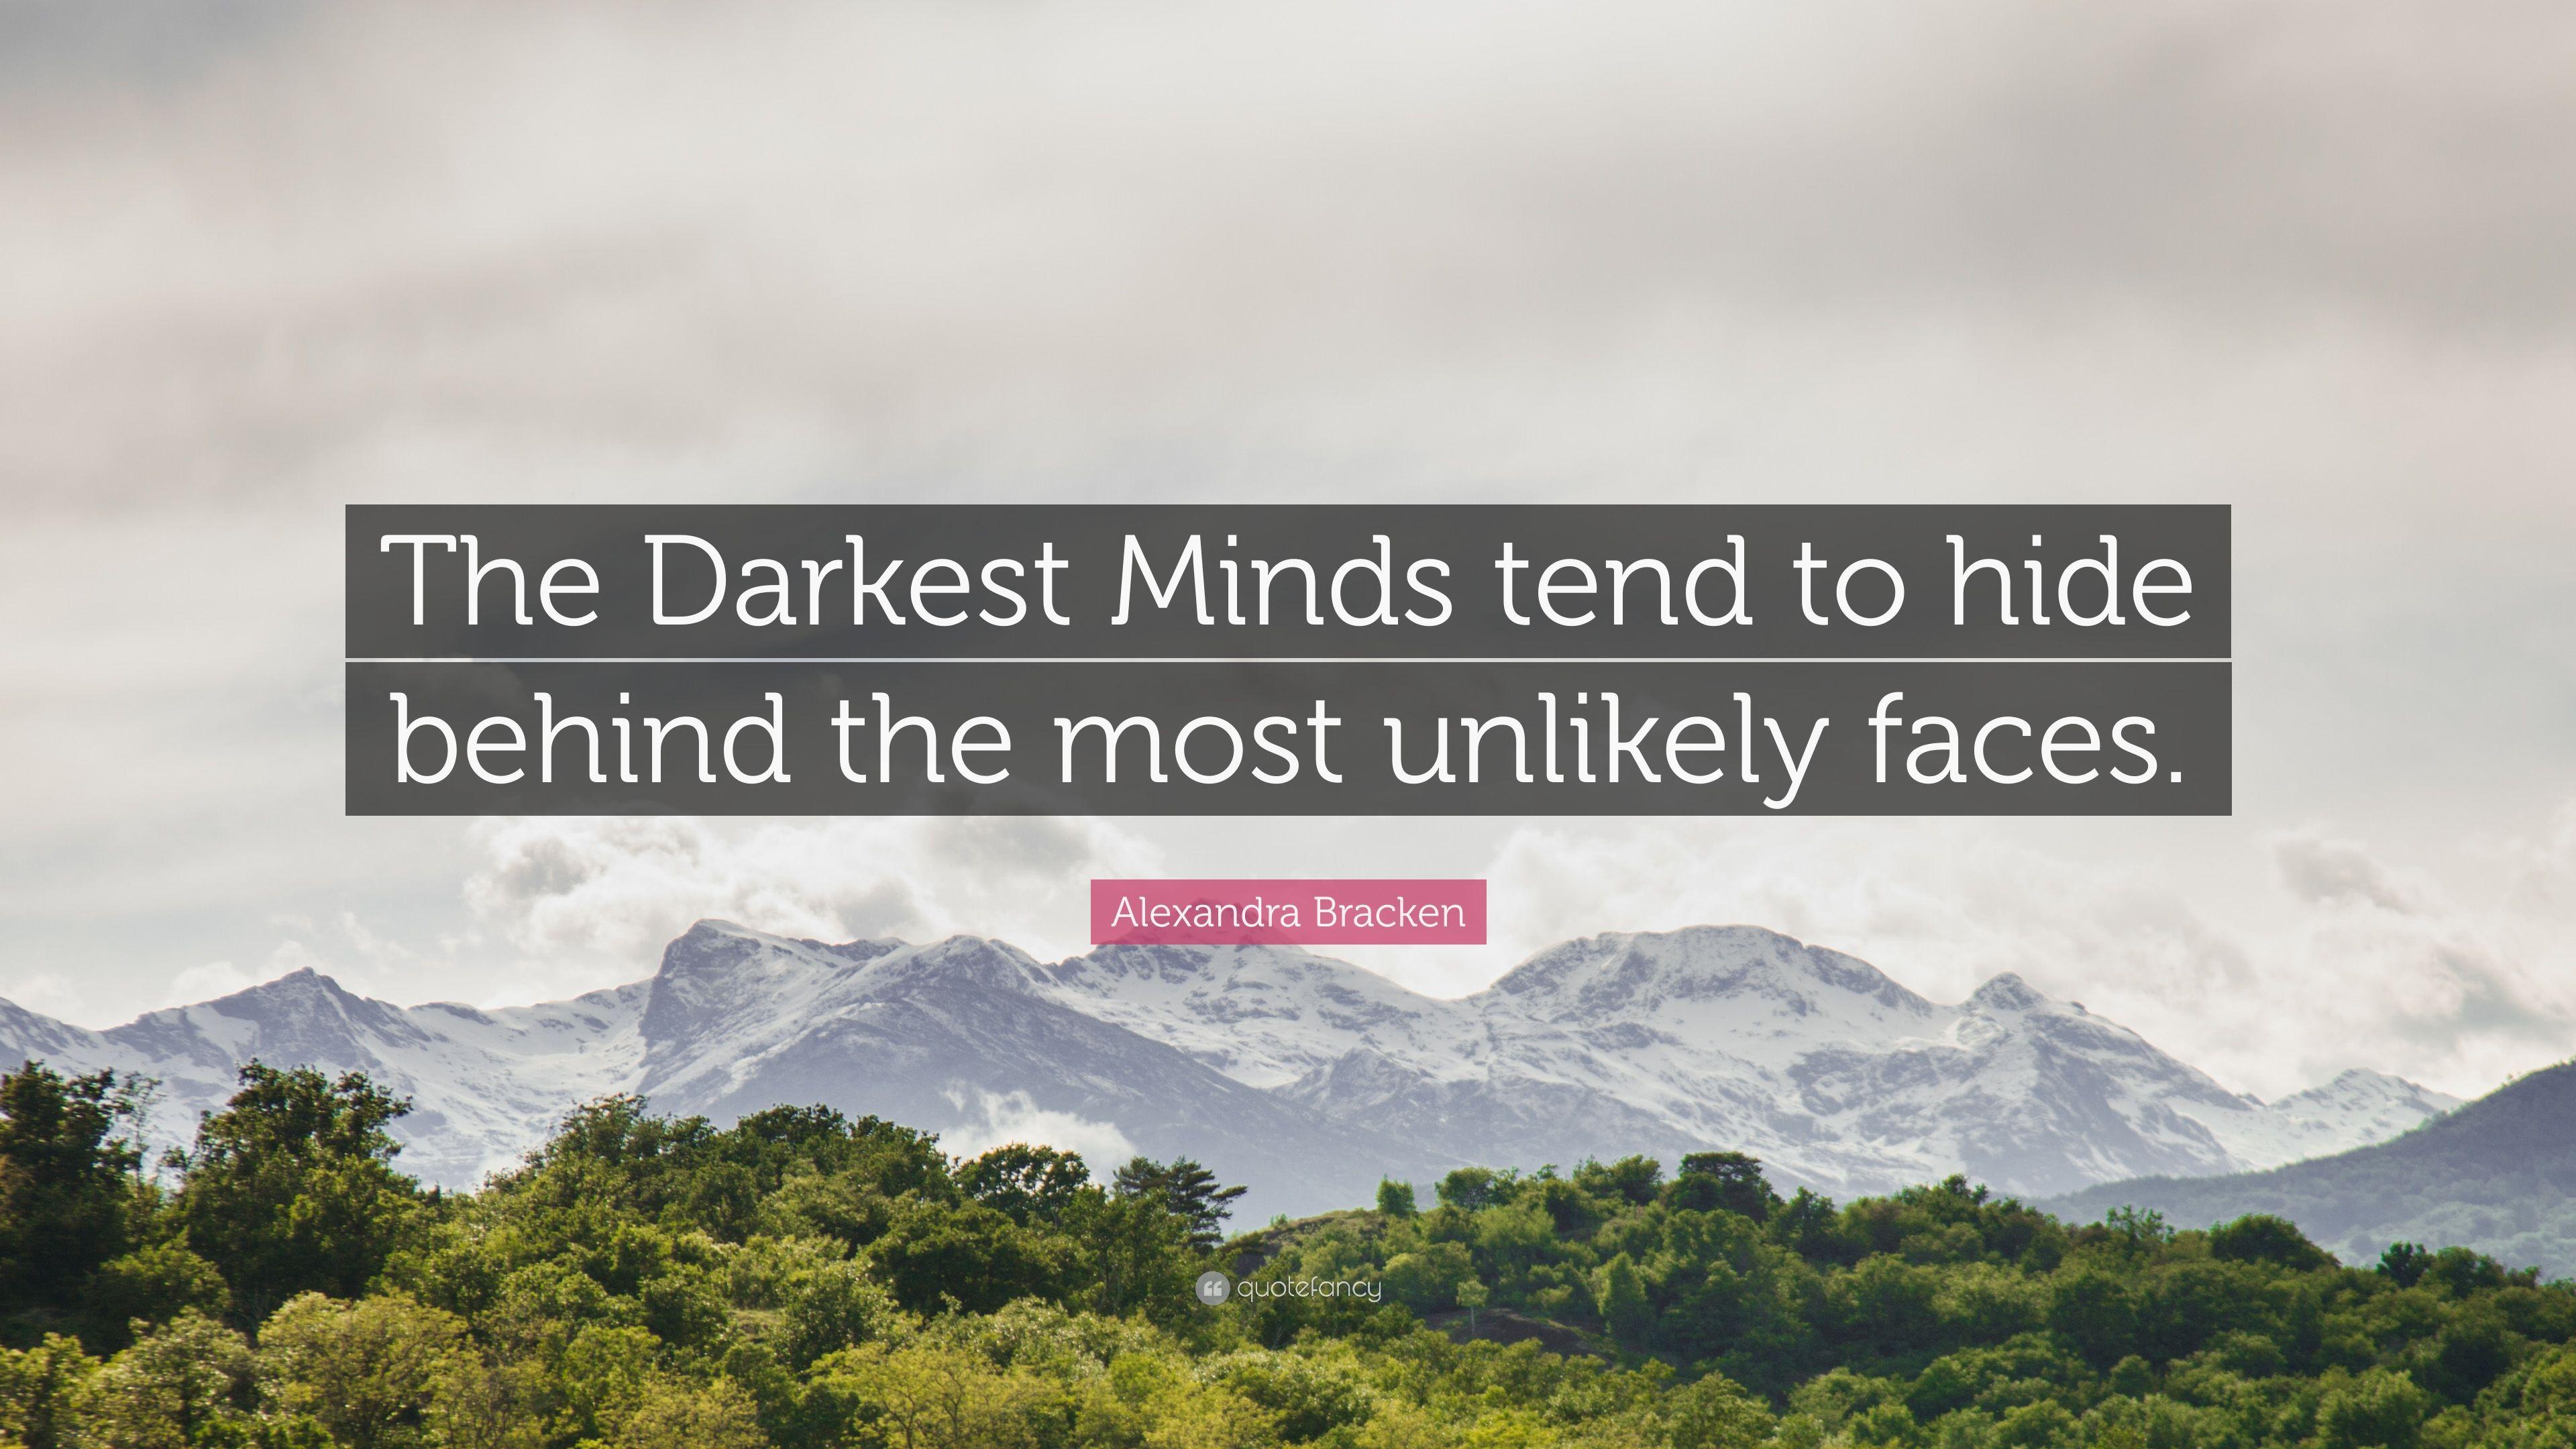 Alexandra Bracken Quote: “The Darkest Minds tend to hide behind